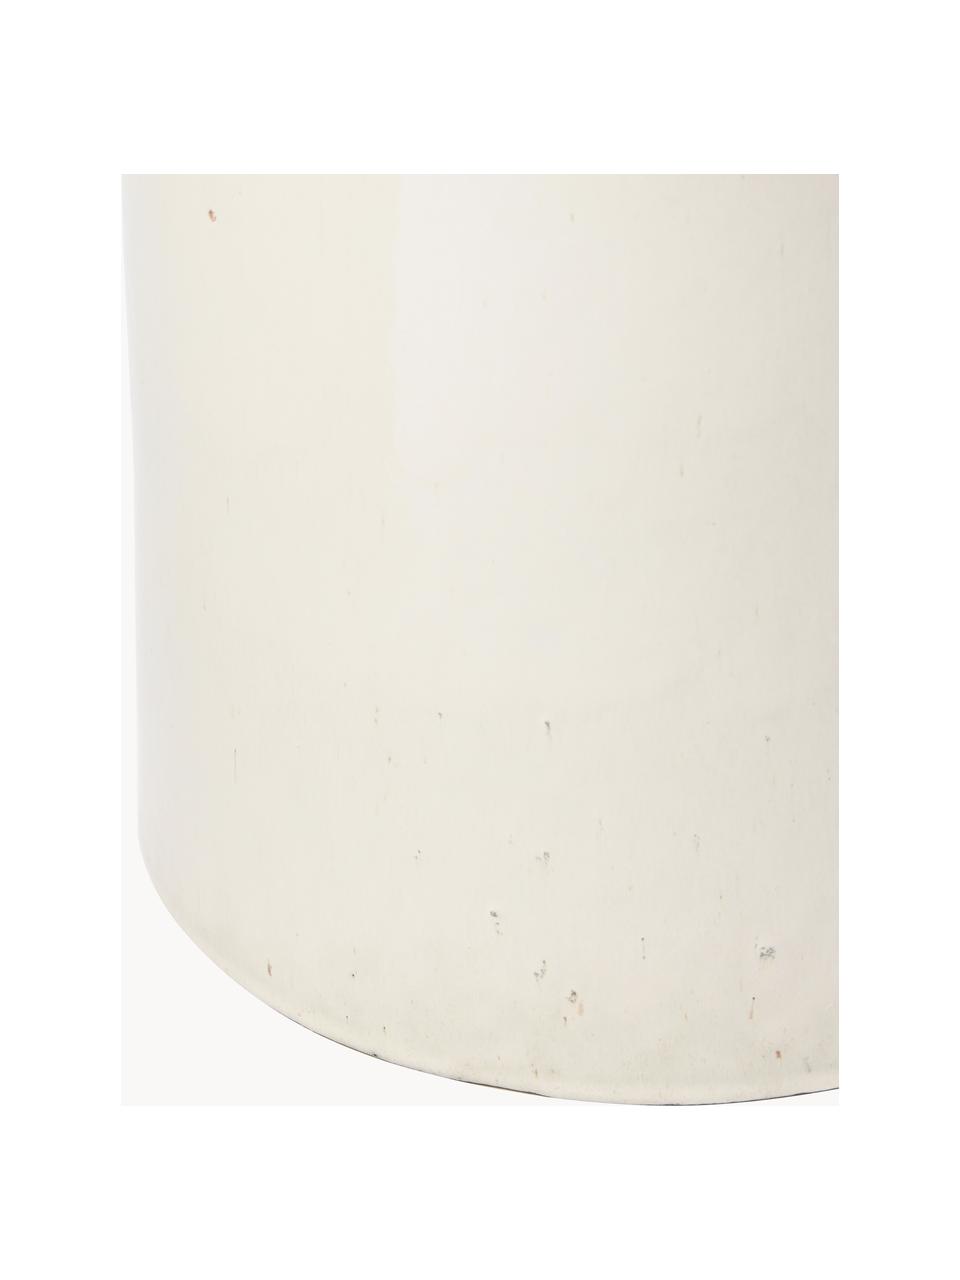 Portavaso bianco con manici Inka, Ceramica, Bianco latteo, Ø 32 x Alt. 44 cm